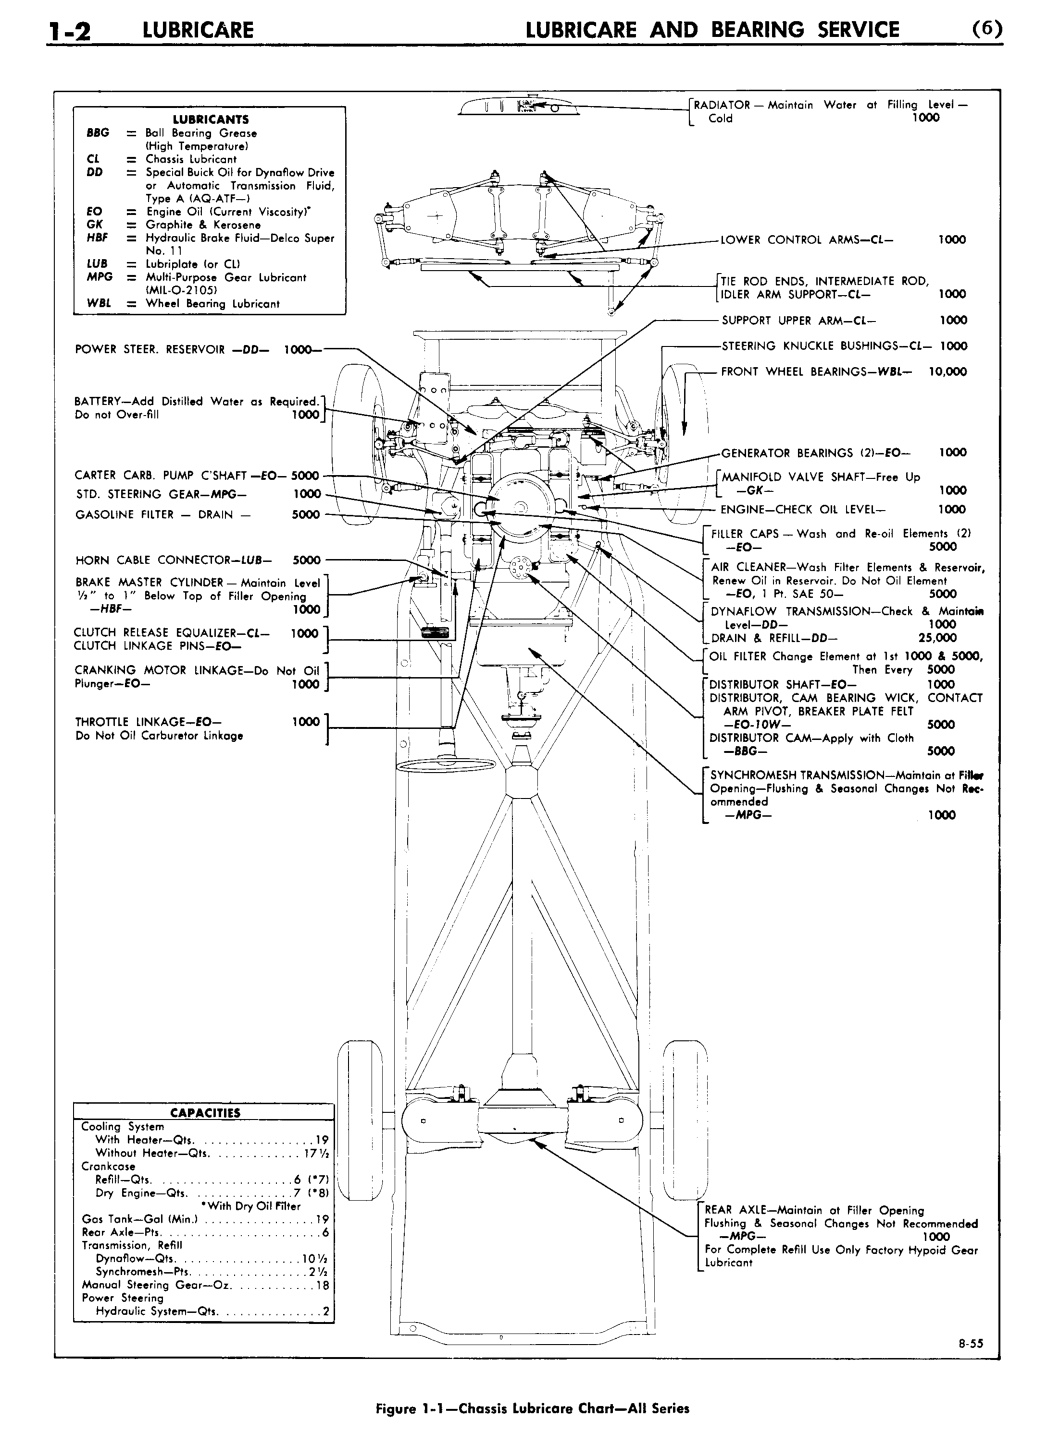 n_02 1956 Buick Shop Manual - Lubricare-002-002.jpg